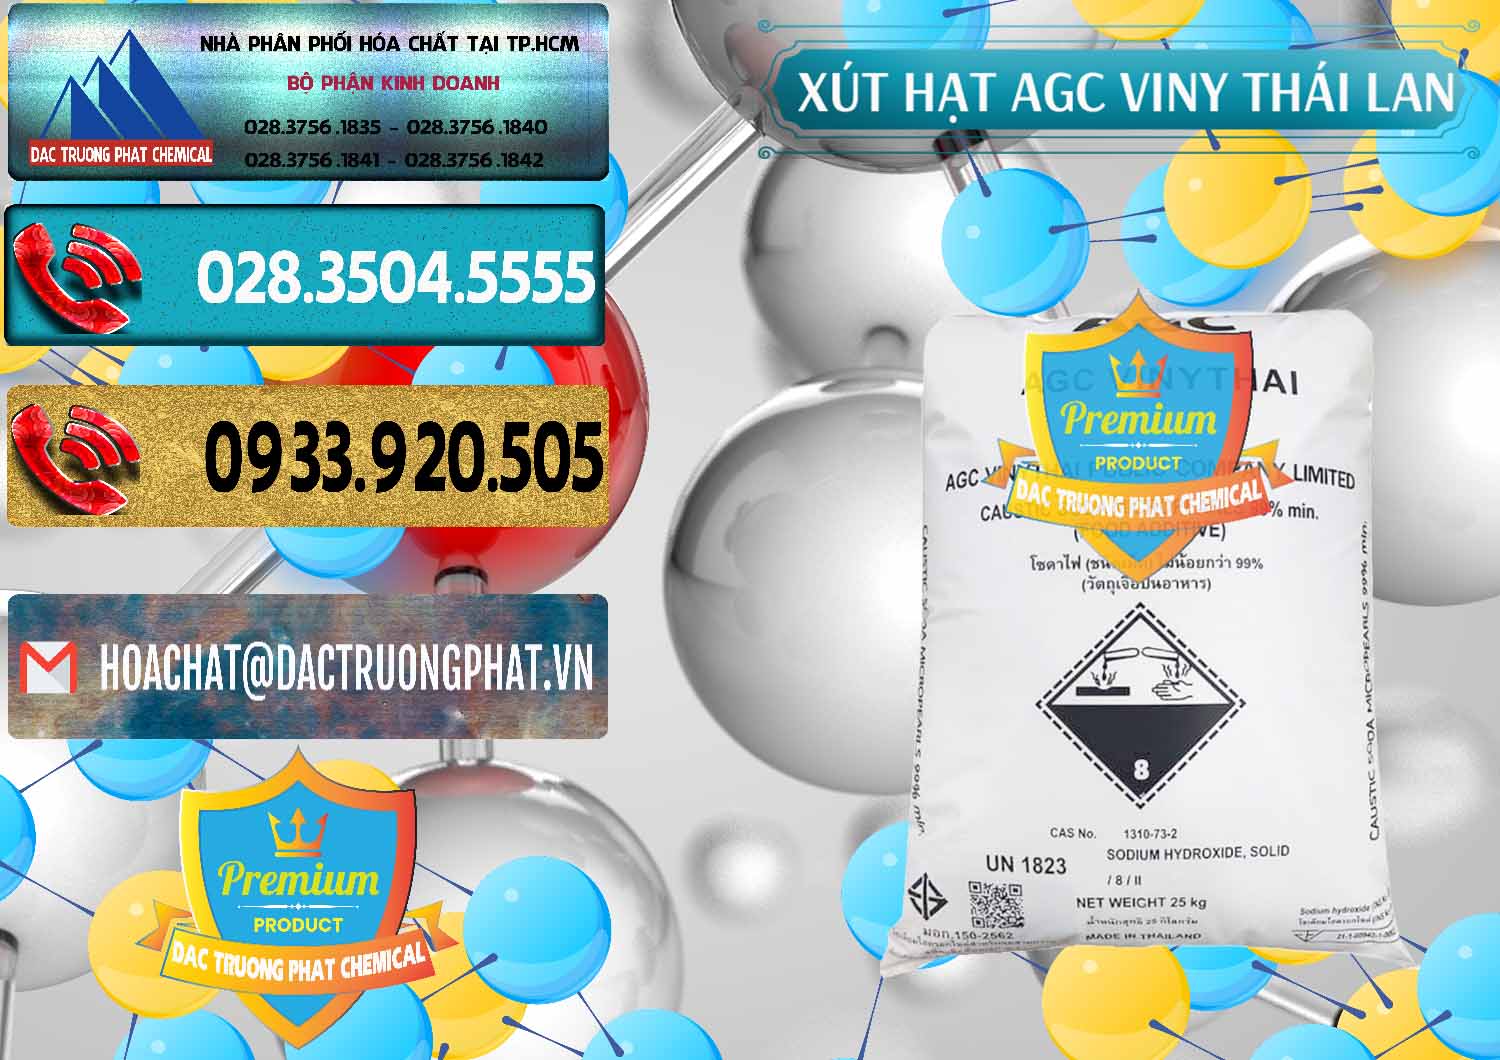 Nơi chuyên kinh doanh và bán Xút Hạt - NaOH Bột 99% AGC Viny Thái Lan - 0399 - Công ty chuyên cung ứng & phân phối hóa chất tại TP.HCM - hoachatdetnhuom.com